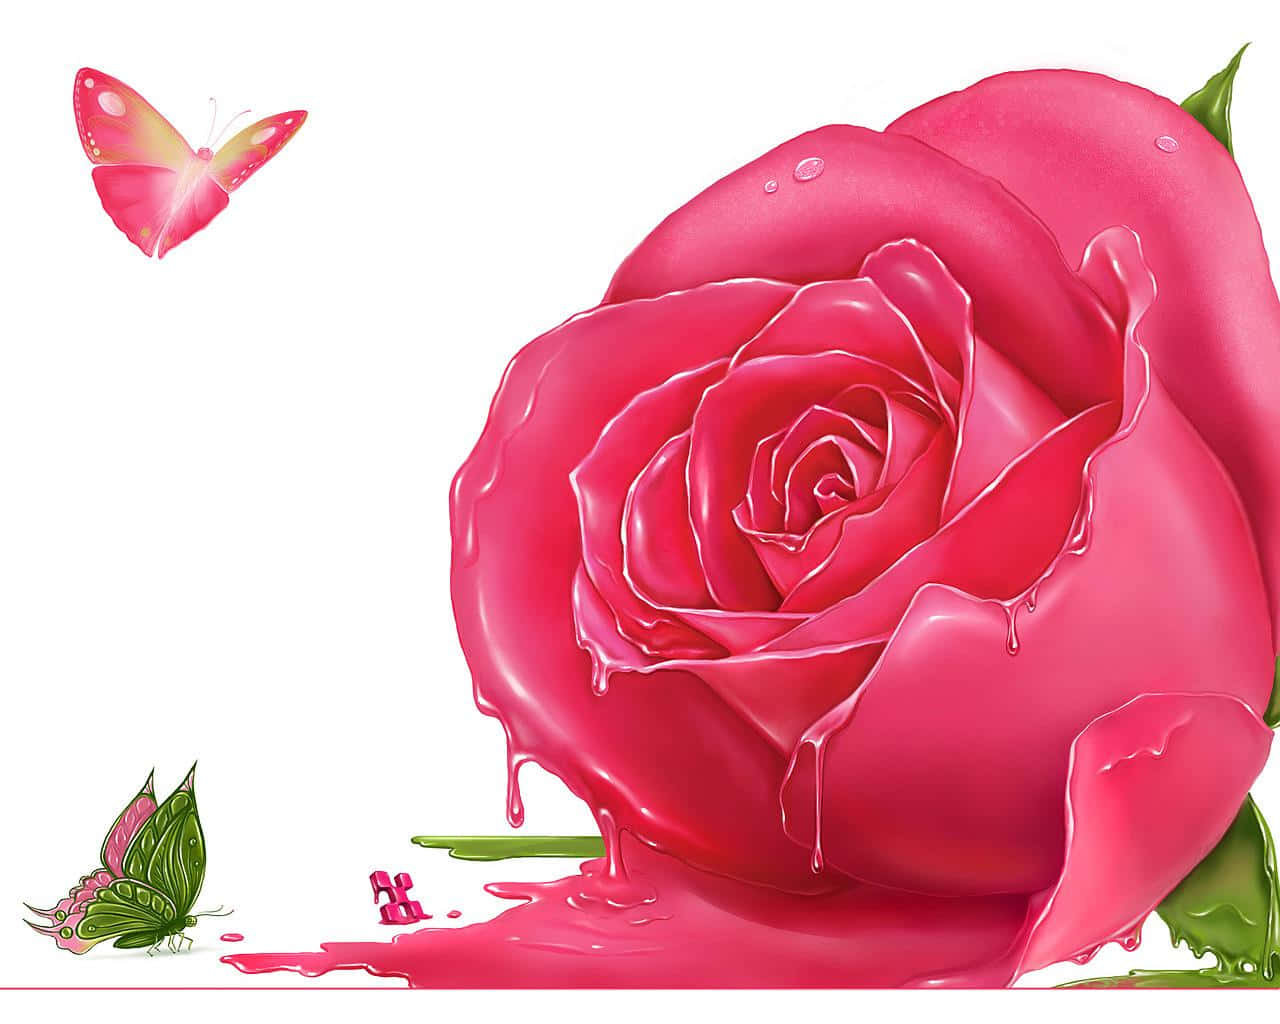 Florecimientosuave De Rosa Rosa Contra Un Delicado Telón De Fondo De Lavanda